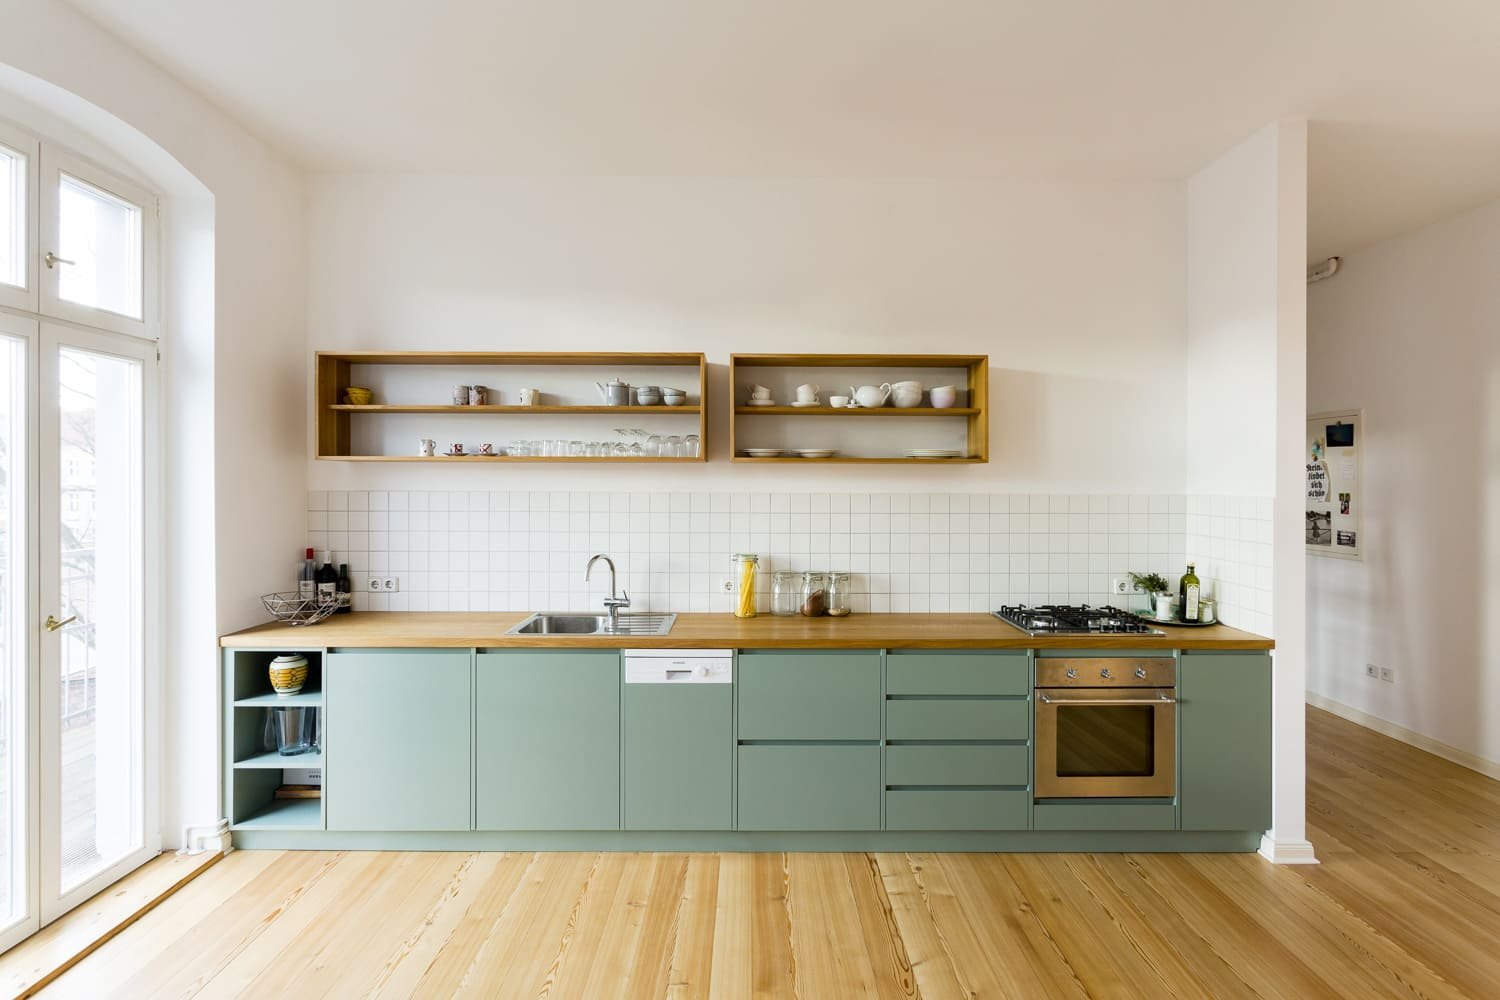 Кухни верх дизайн. Кухня икеа Калларп зеленая. Кухонный гарнитур ikea без верхних шкафов. Мятная кухня икеа. Кухонный гарнитур без навесных шкафов.